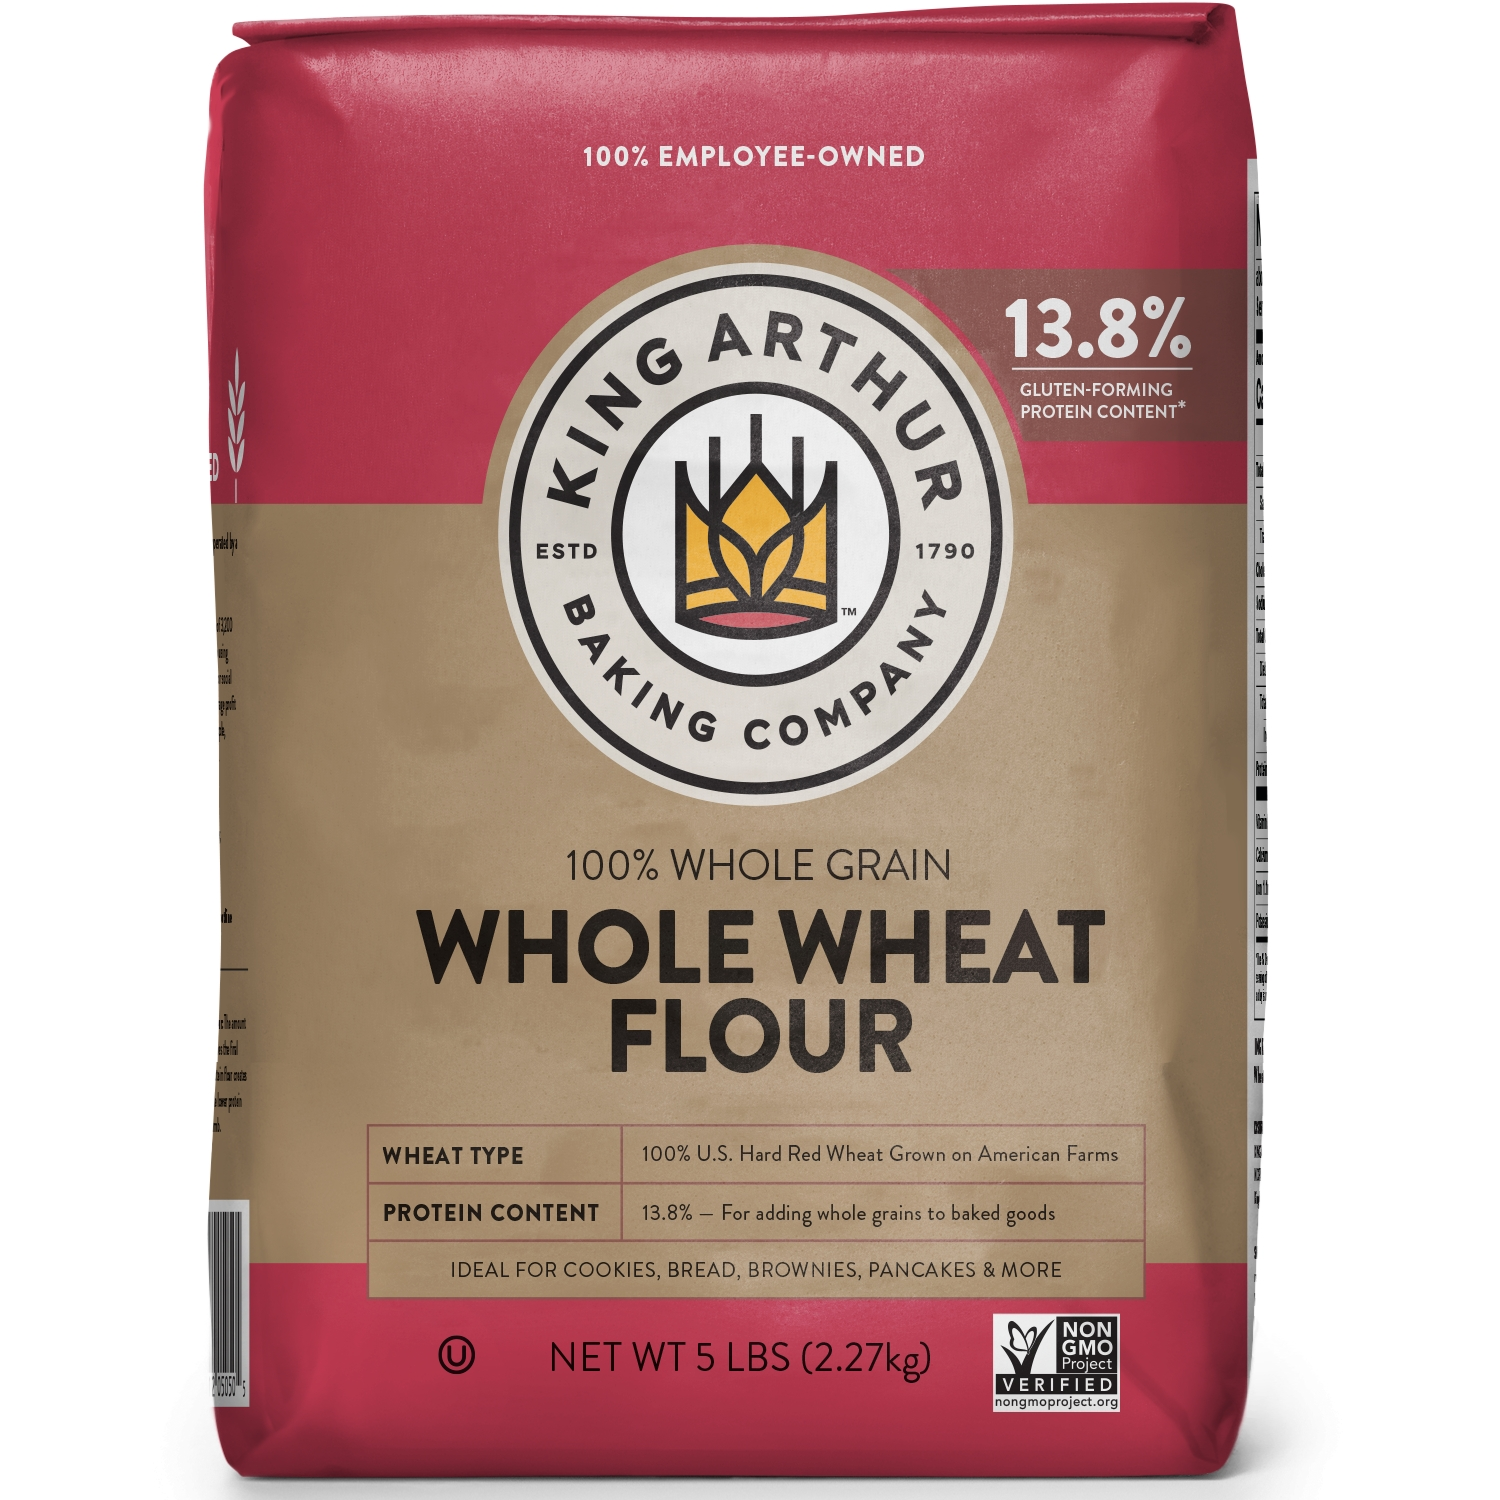 King Arthur Flour 100% Premium Whole Wheat Flour, 80 oz - image 1 of 5